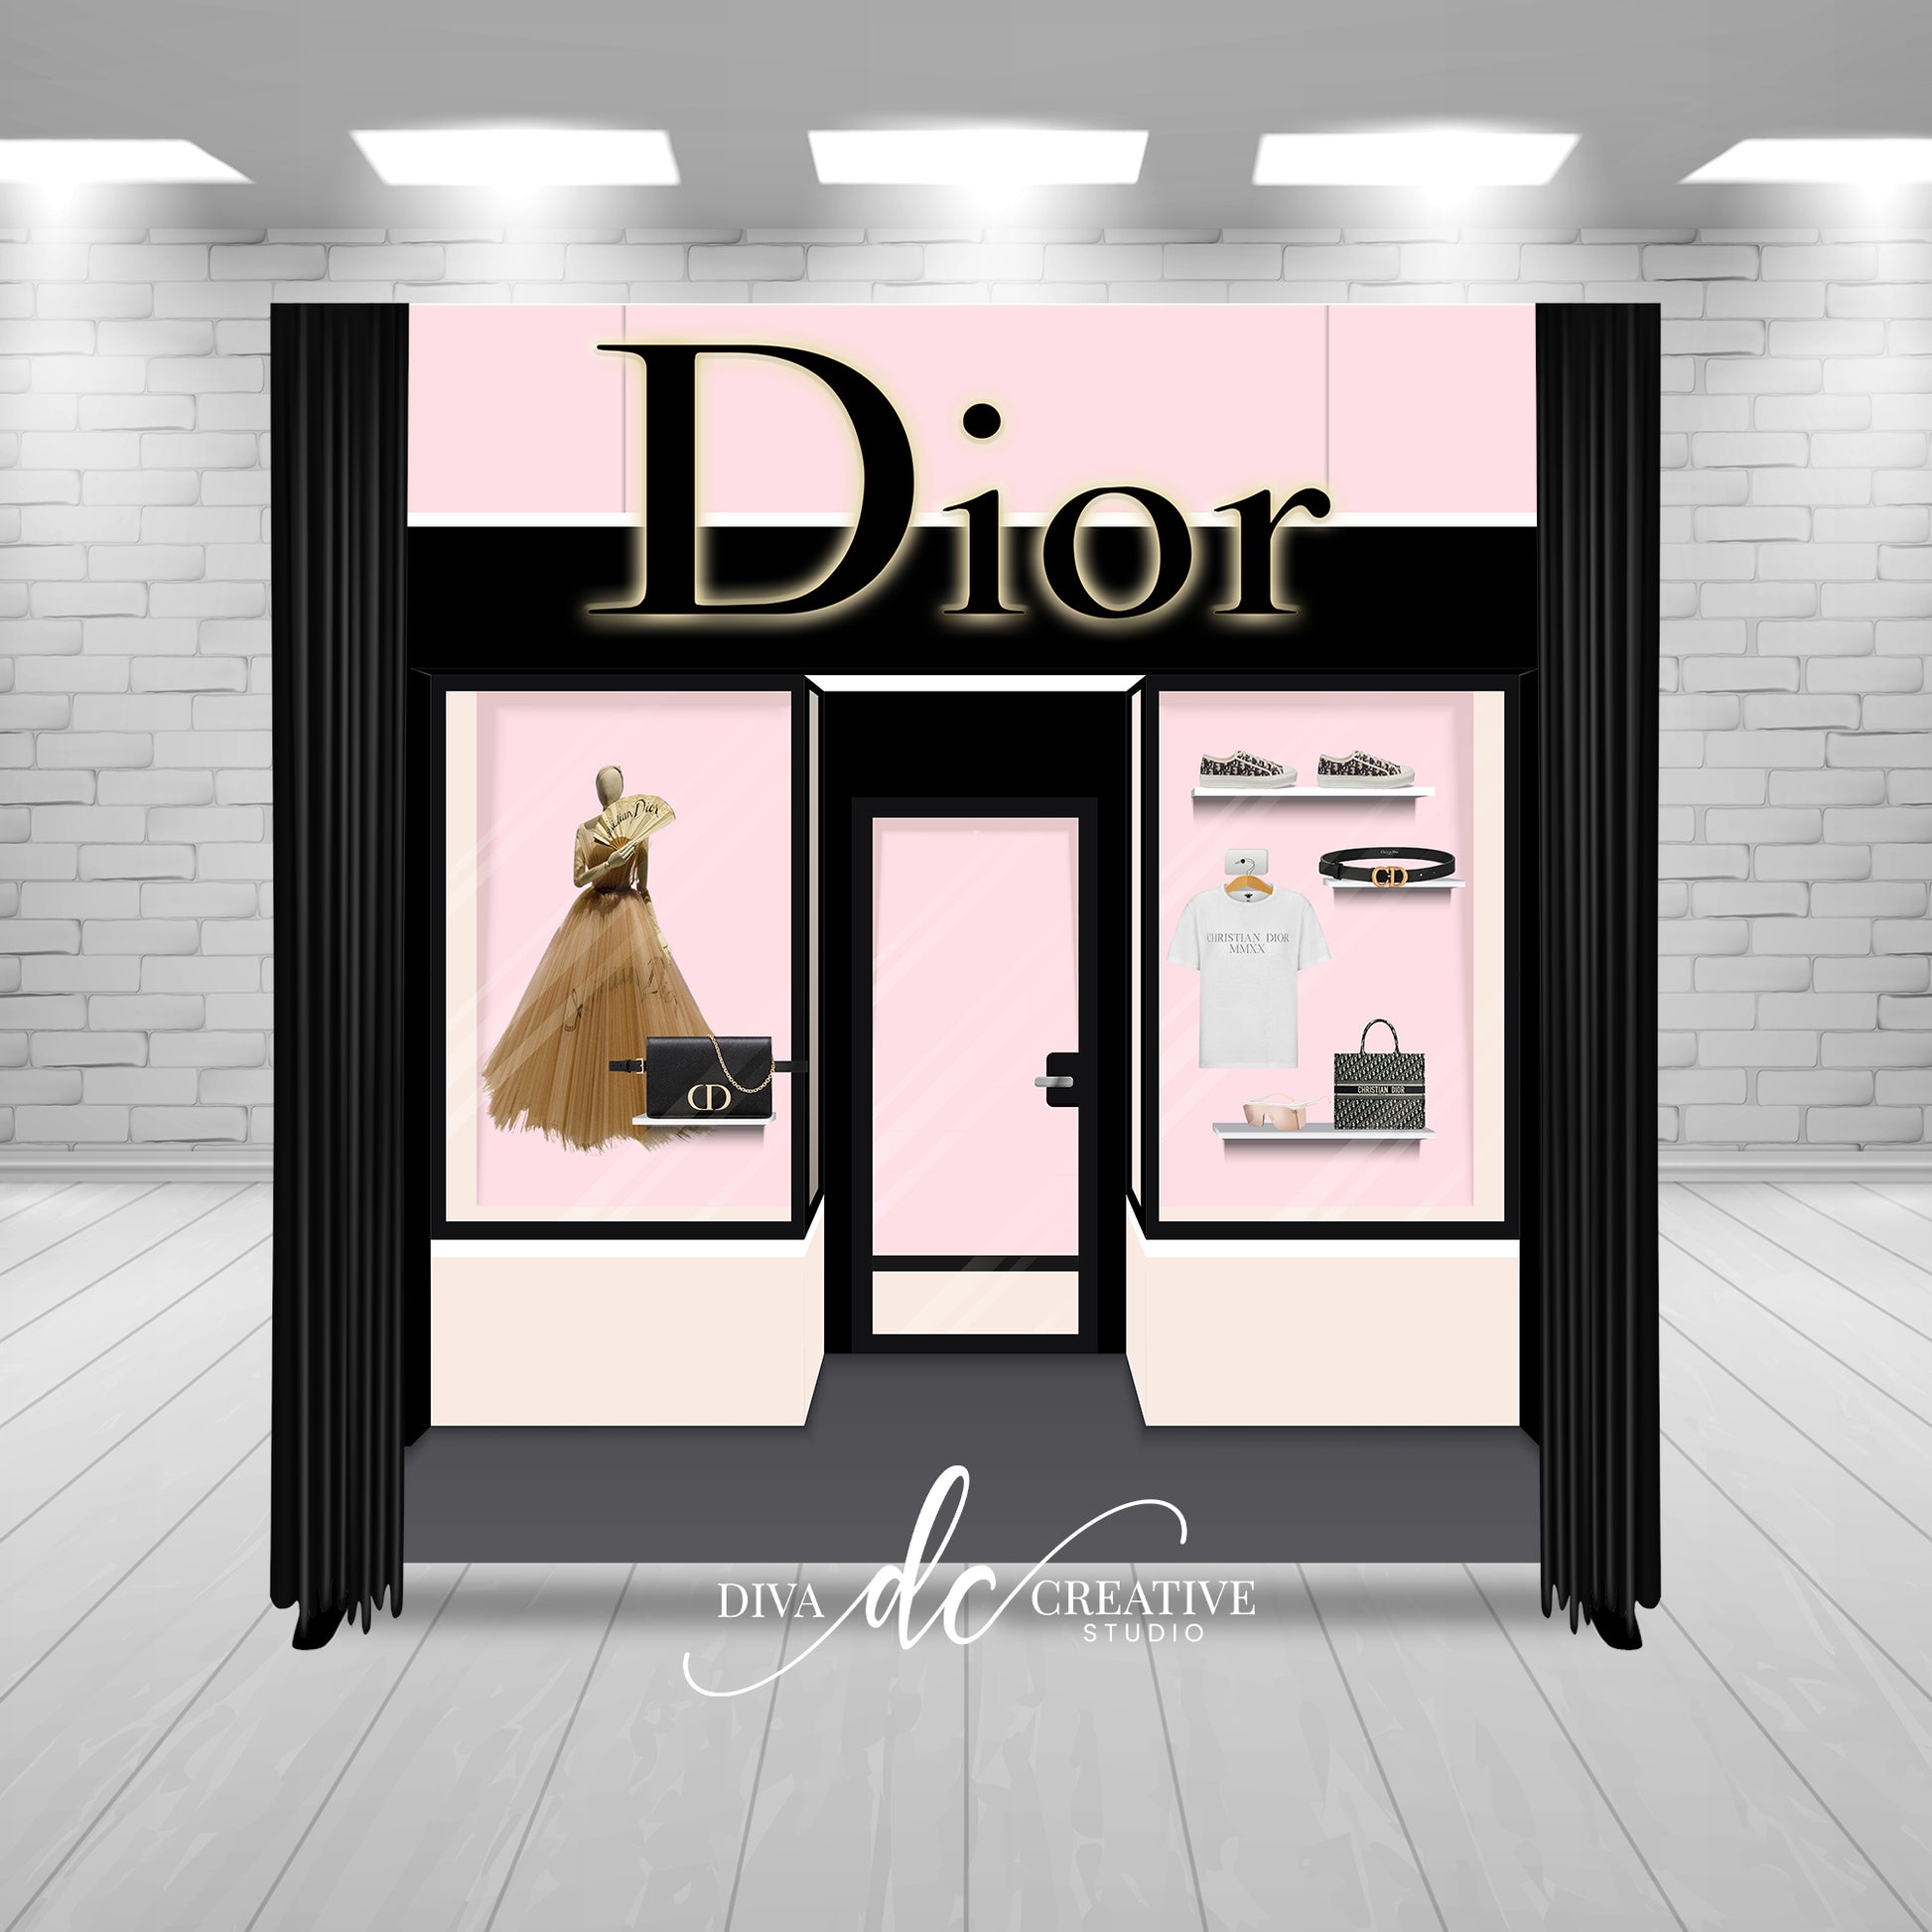 Dior final copy